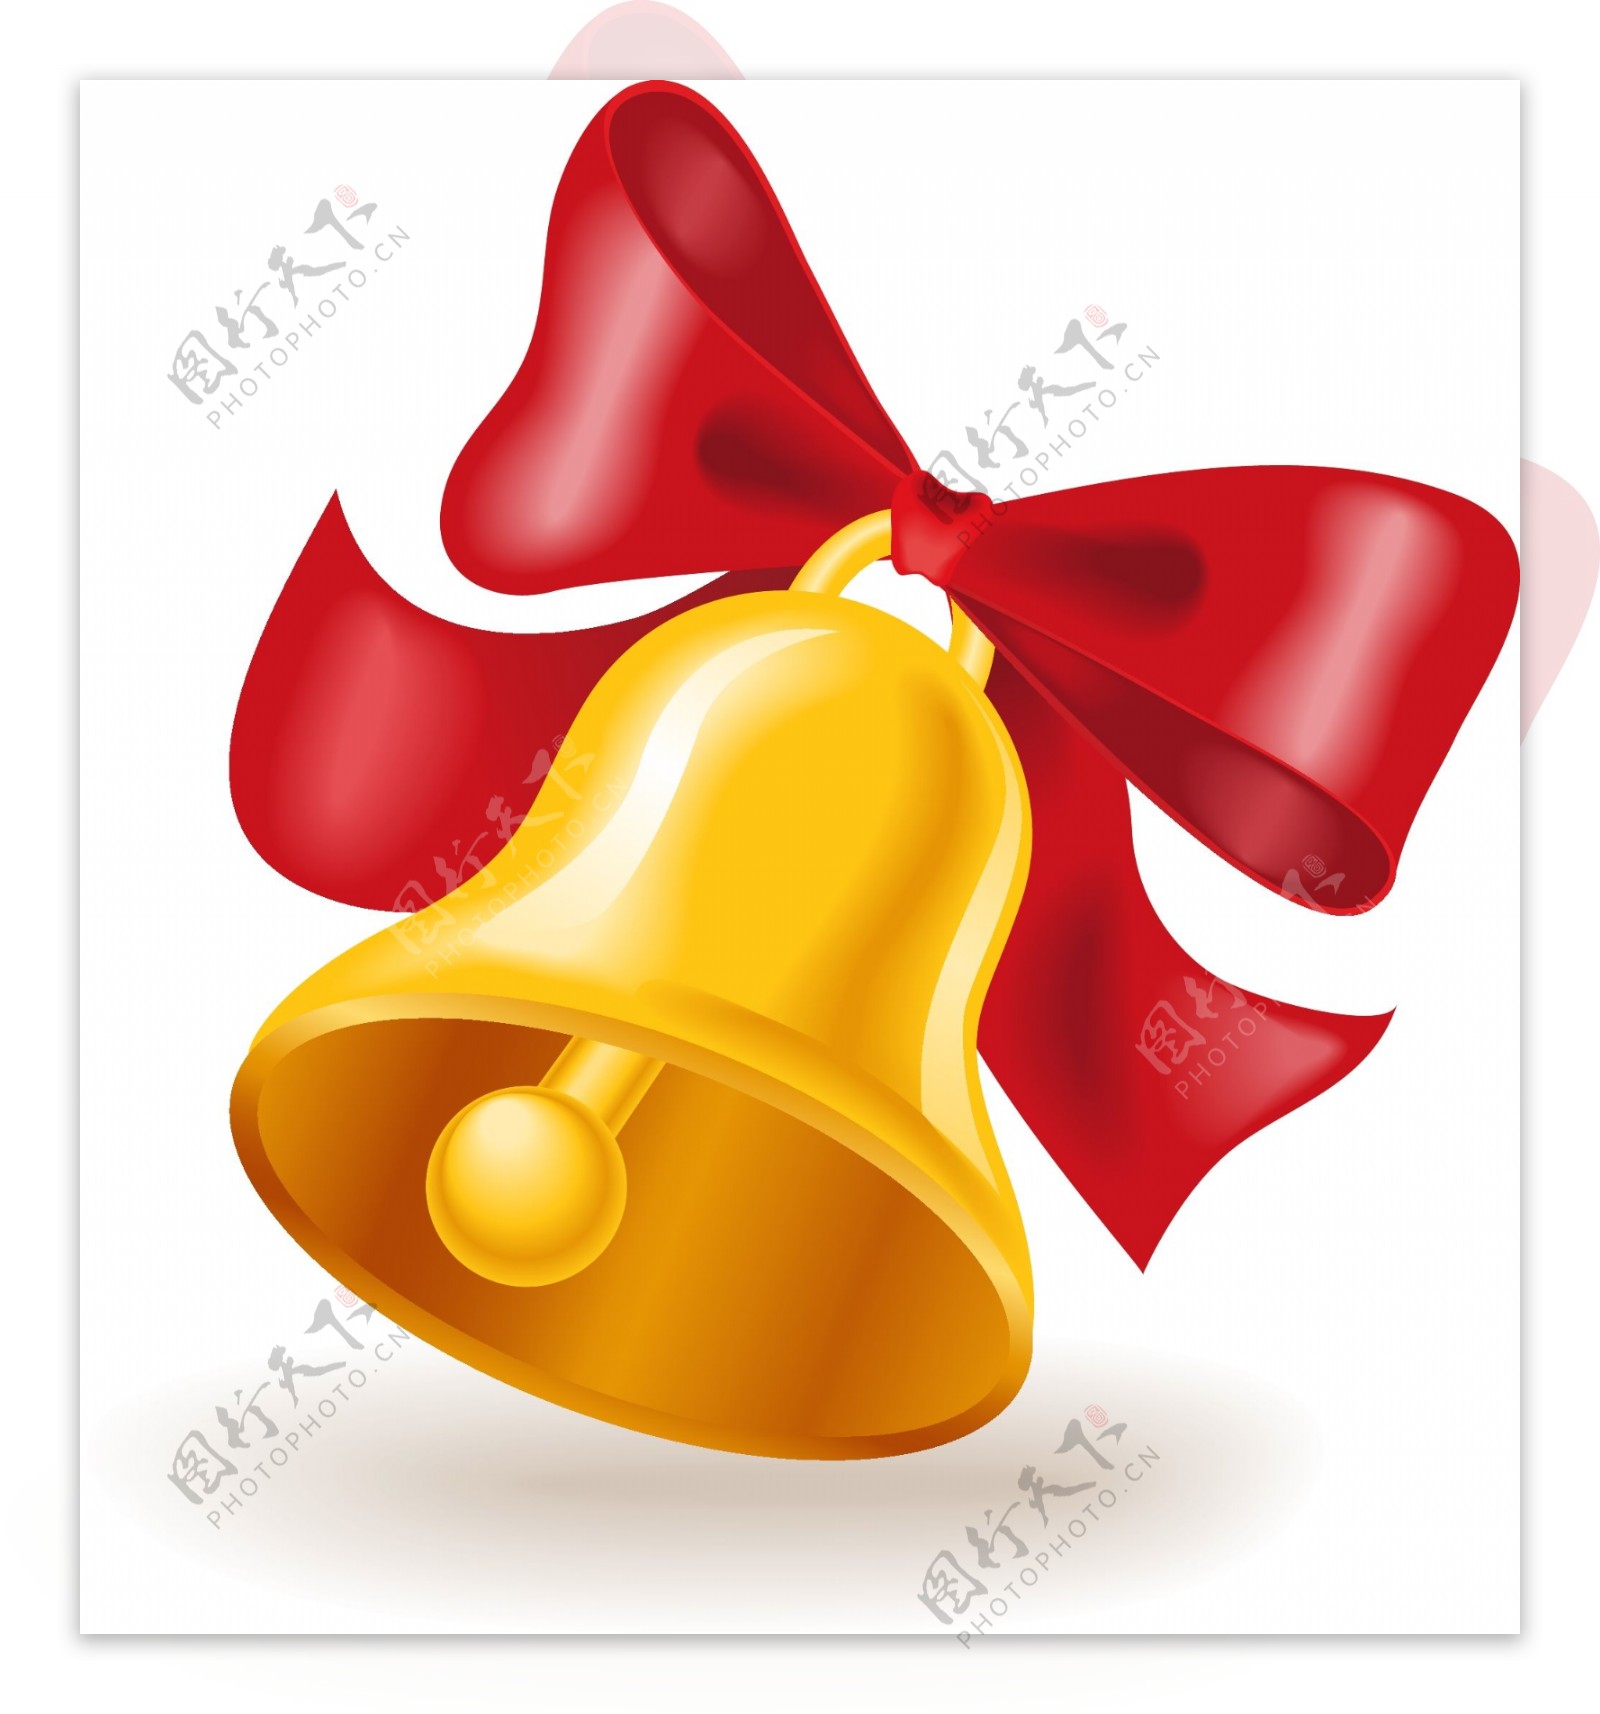 黄色铃铛与红色蝴蝶结